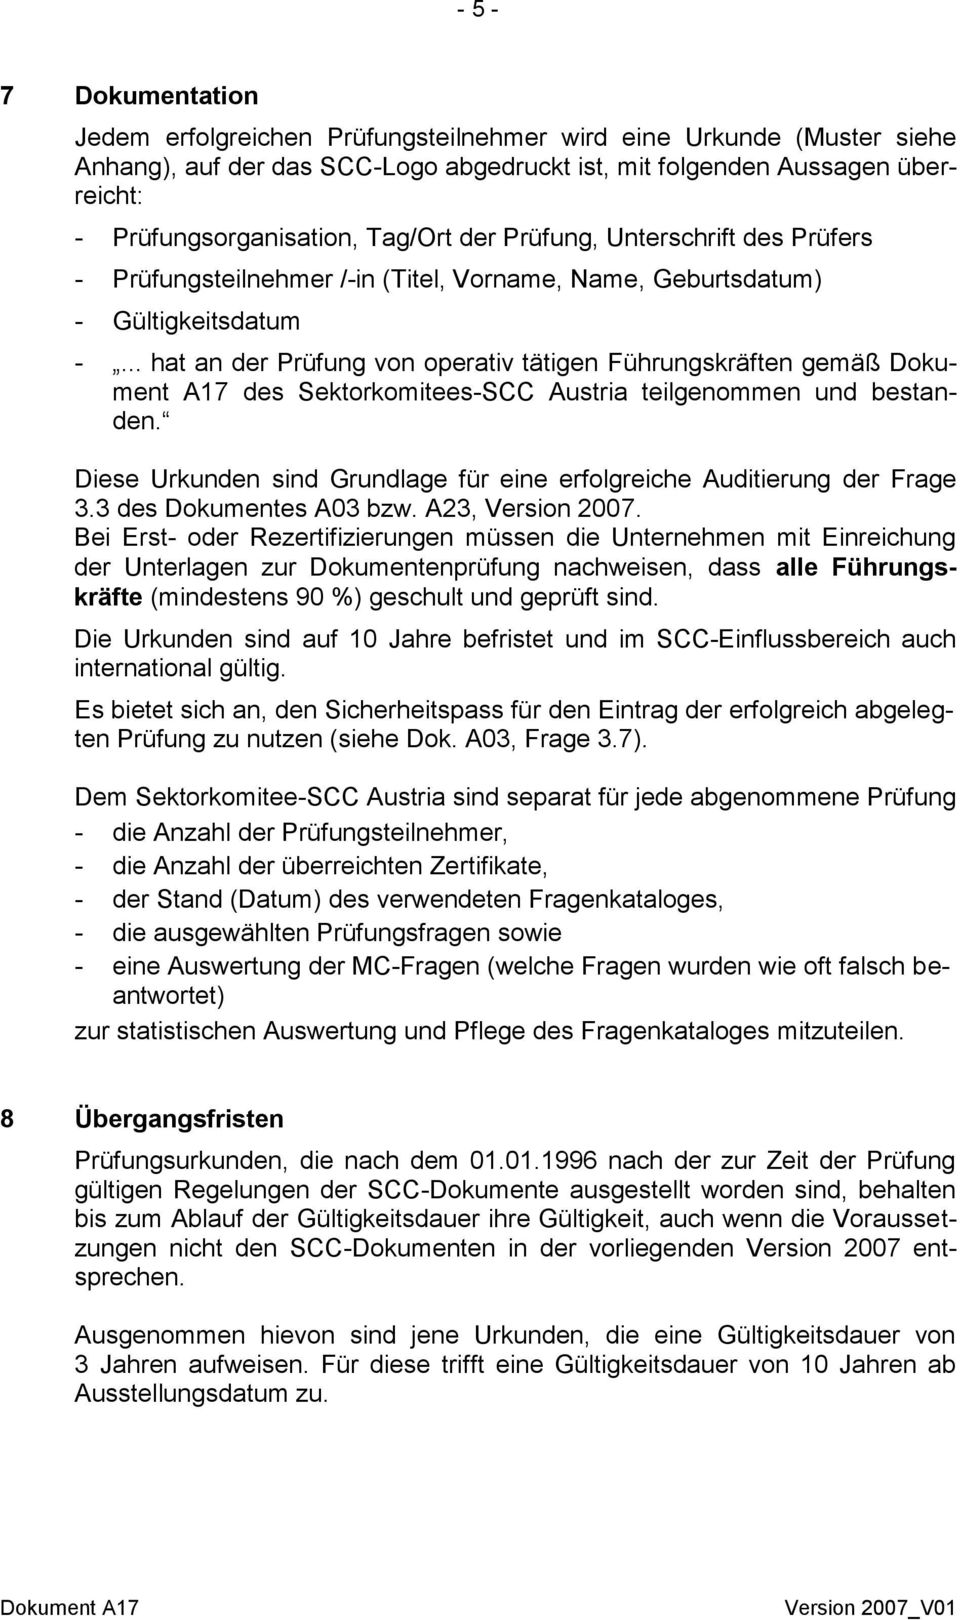 .. hat an der Prüfung von operativ tätigen Führungskräften gemäß Dokument A17 des Sektorkomitees-SCC Austria teilgenommen und bestanden.